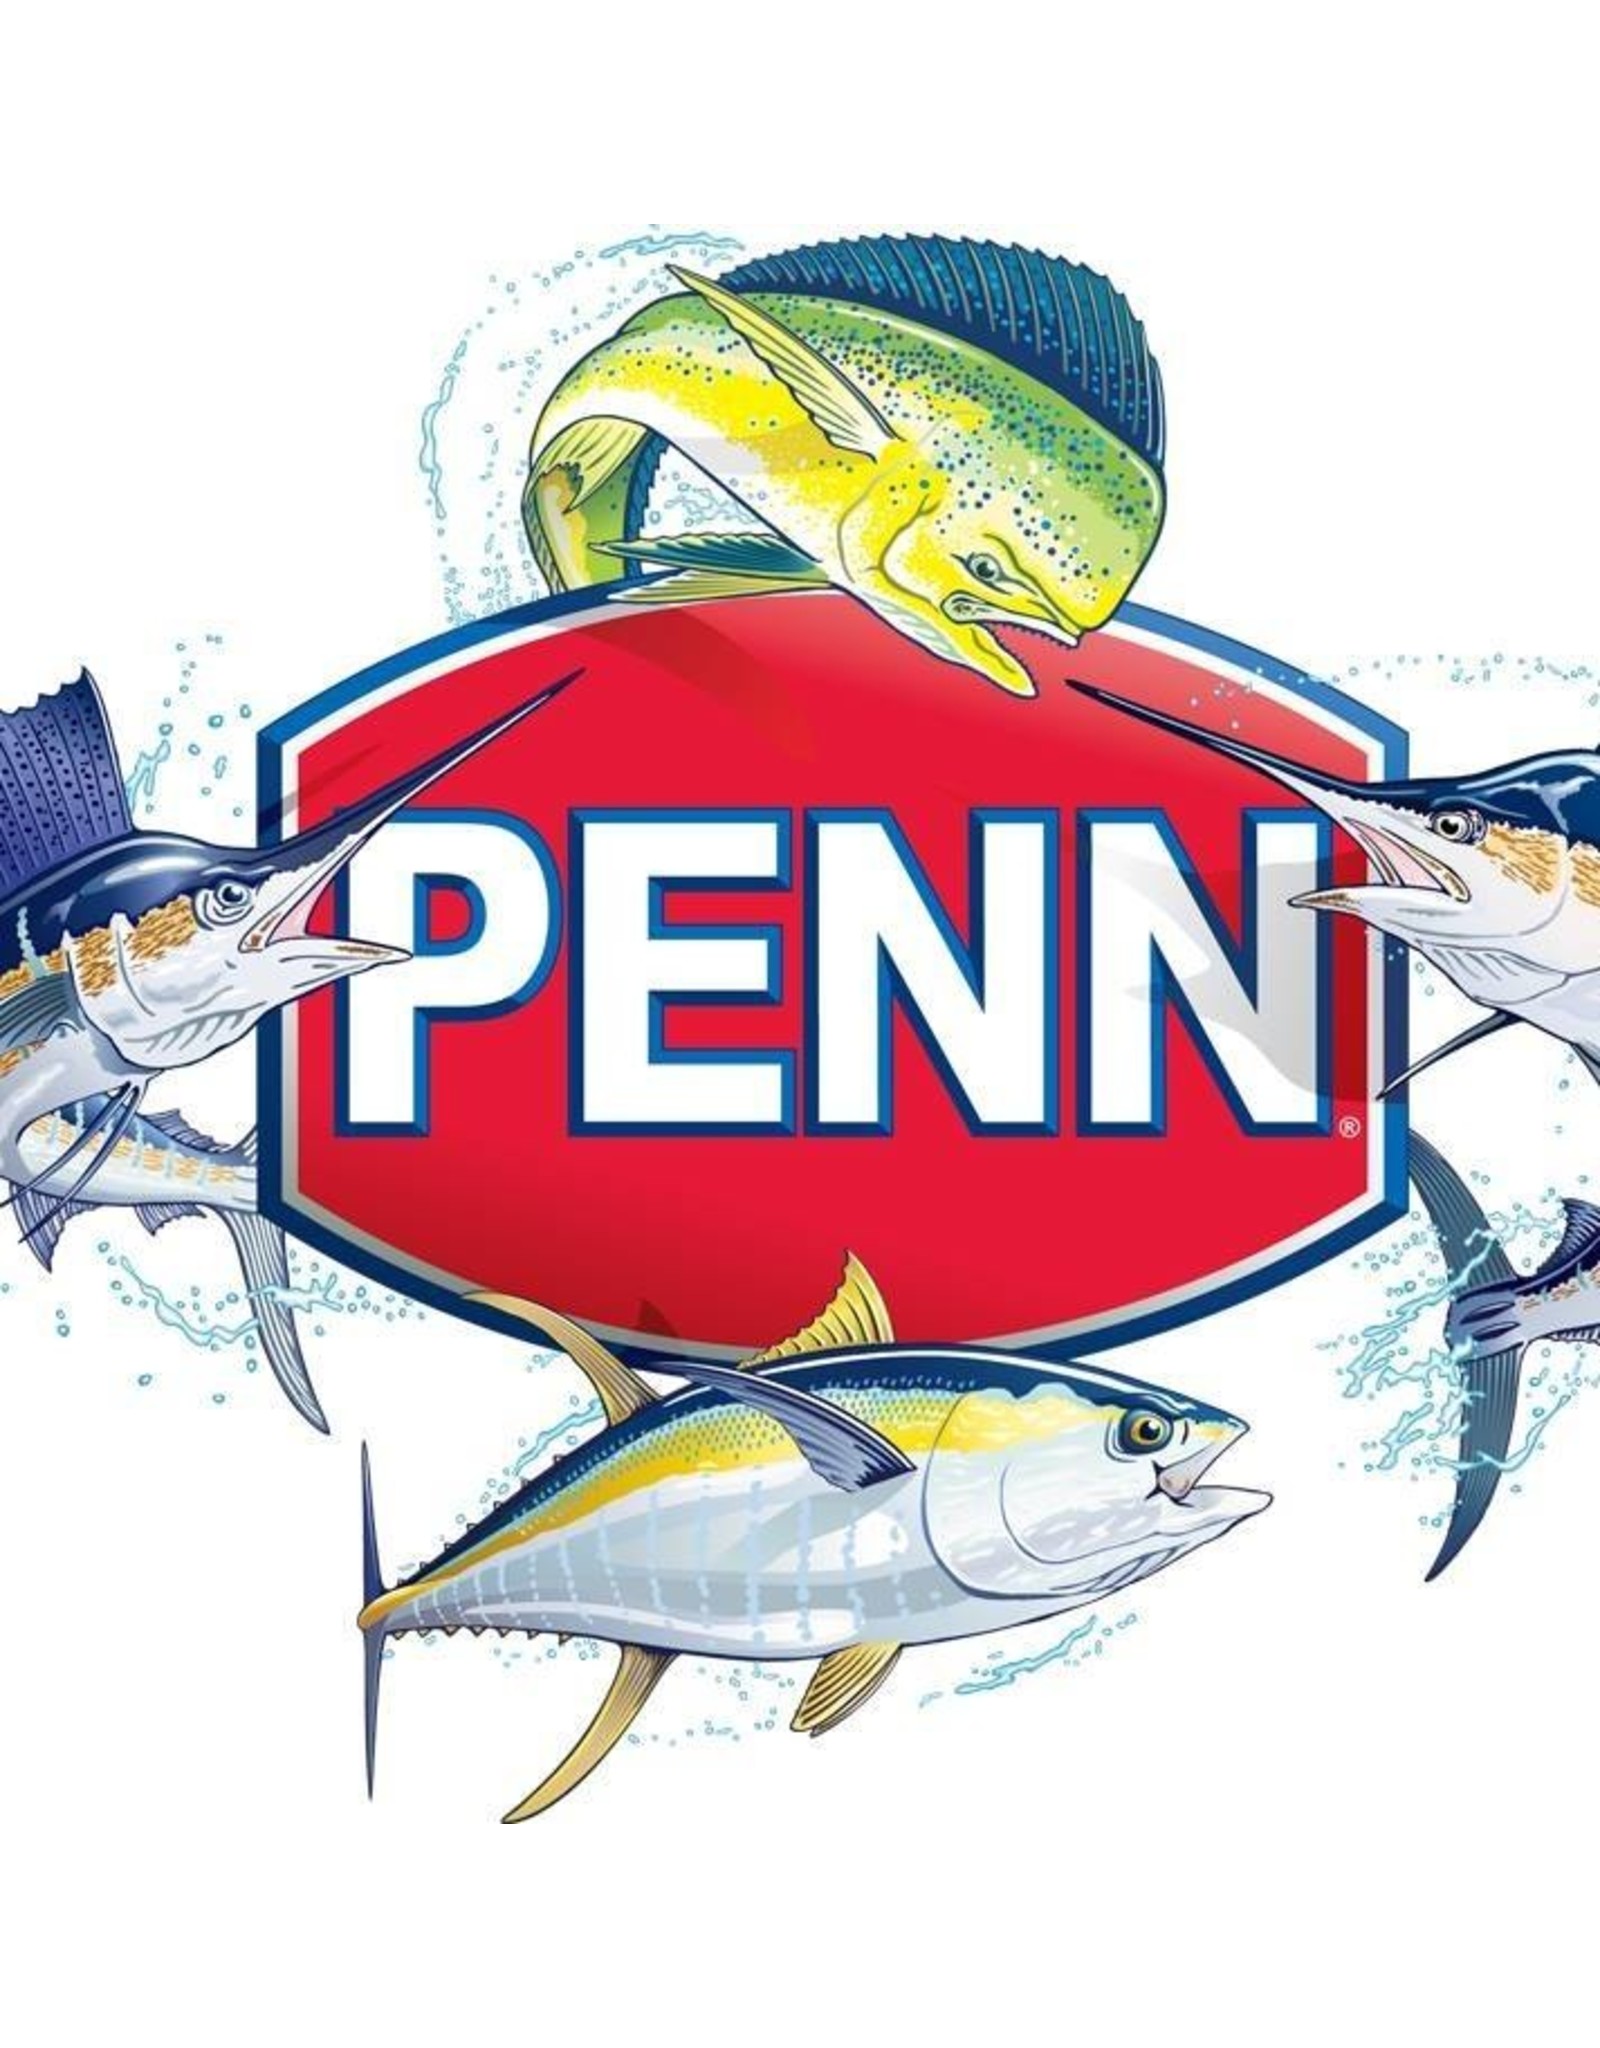 Penn 183N-114HL  FRAME/NLA